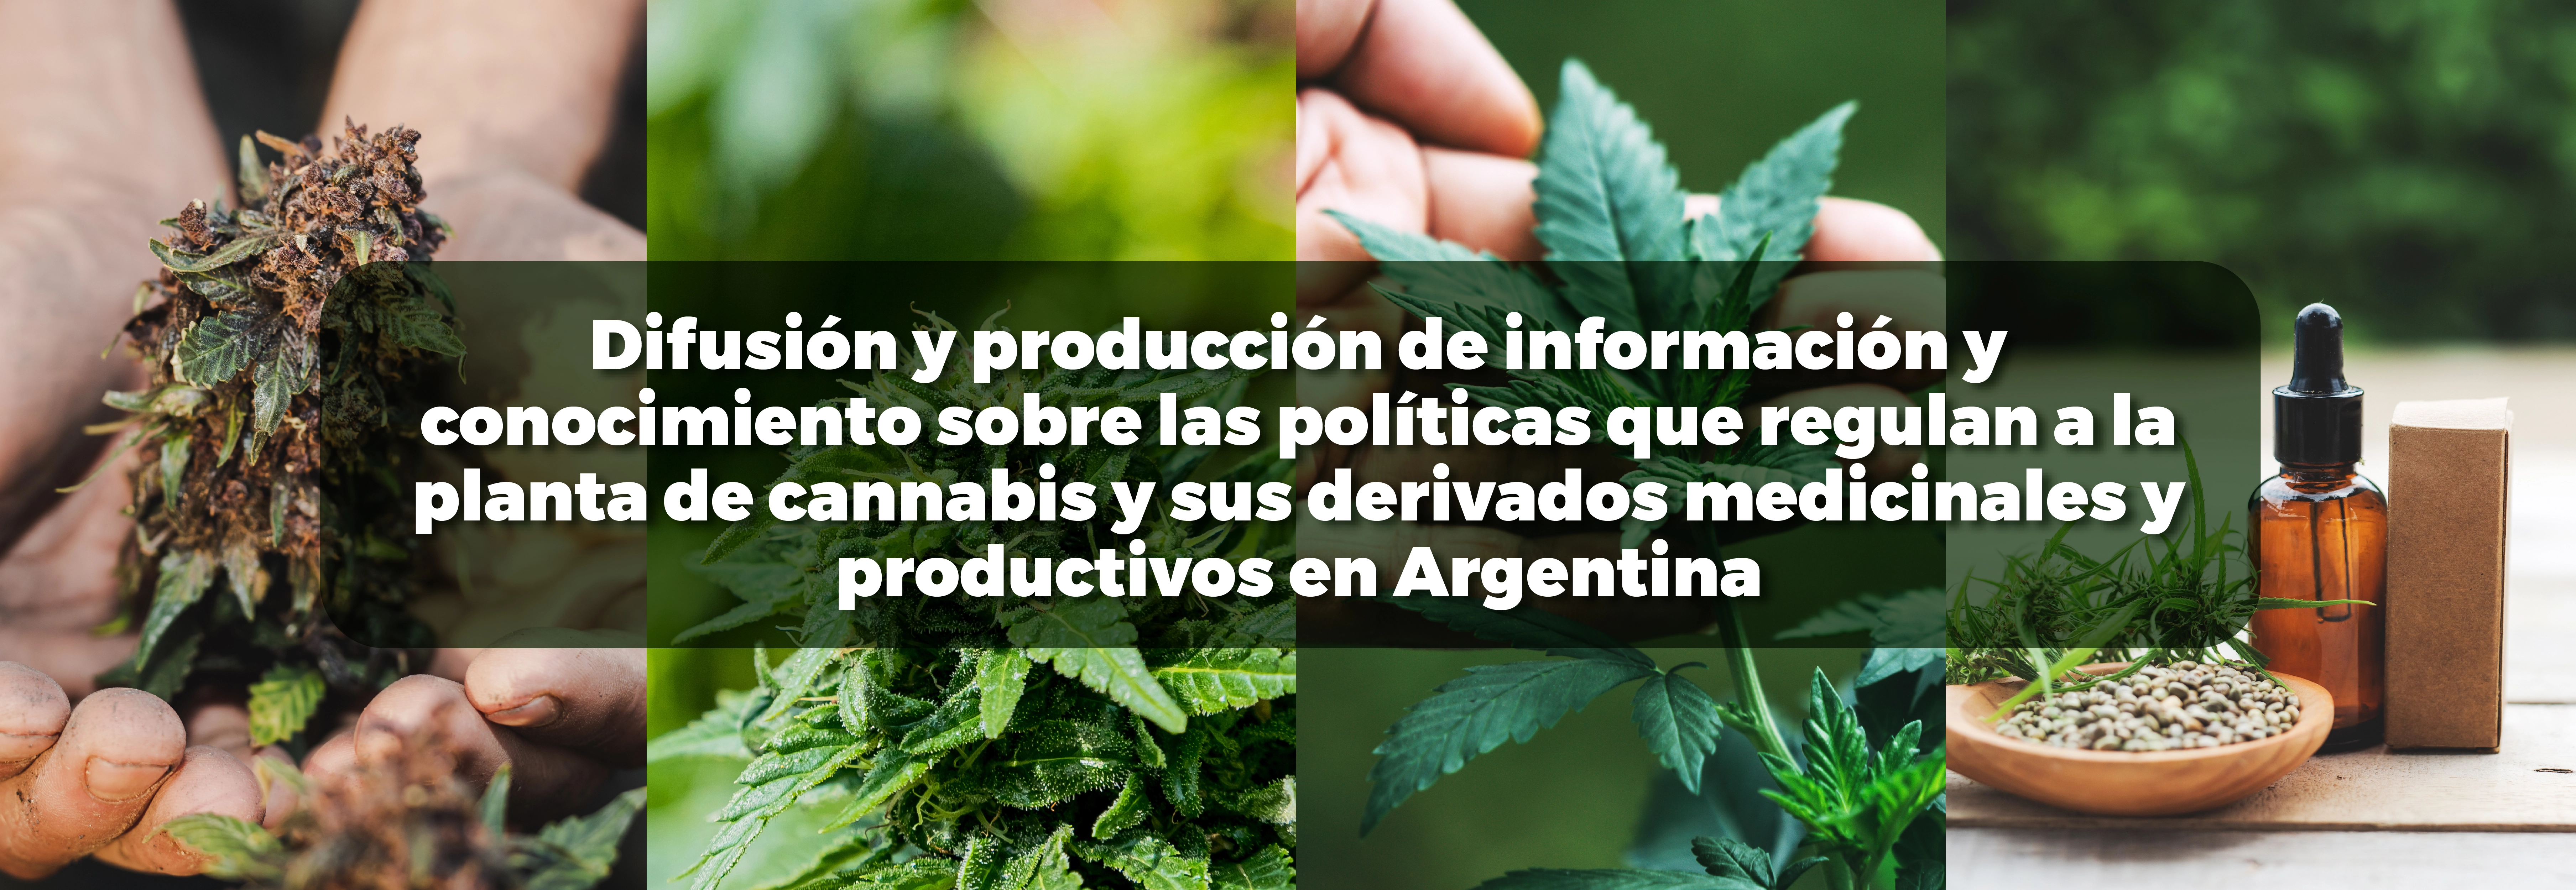 Difusión y producción de información y conocimiento sobre las políticas que regulan a la planta de cannabis y sus derivados medicinales y productivos en Argentina